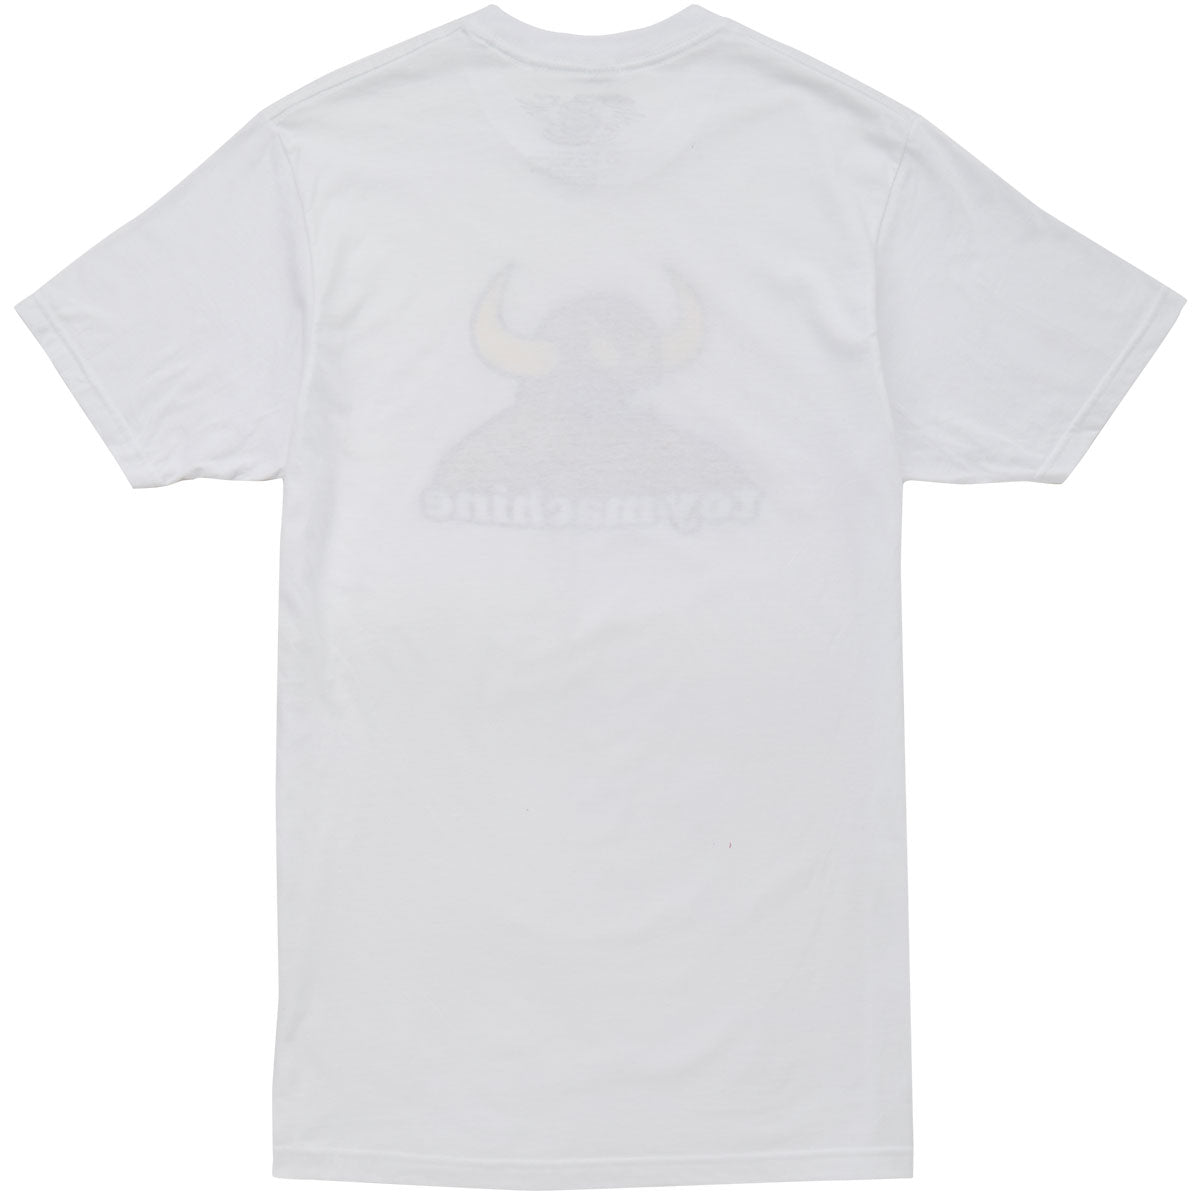 Toy Machine Monster T-Shirt - White image 2